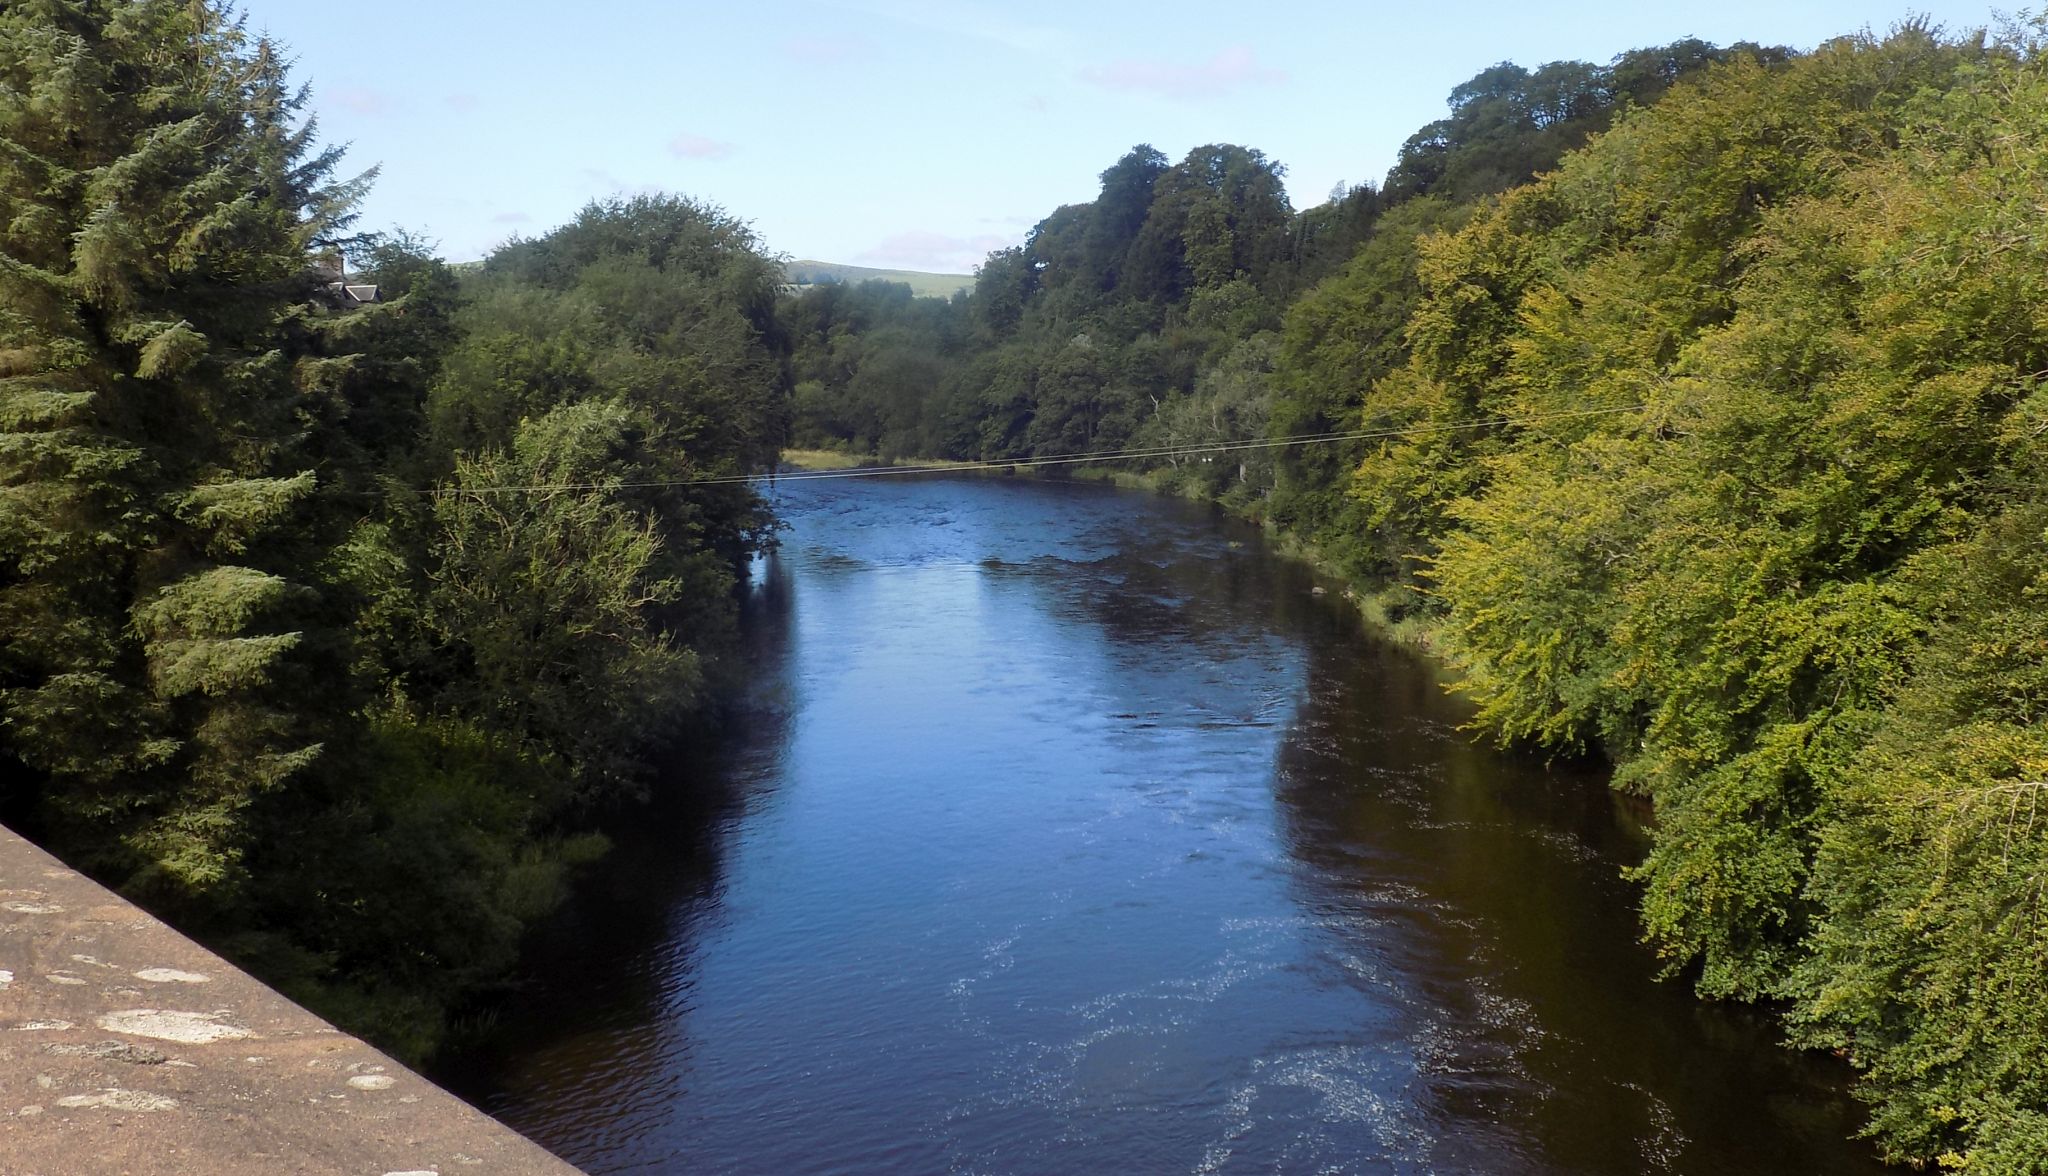 River Clyde from bridge at Kikfieldbank